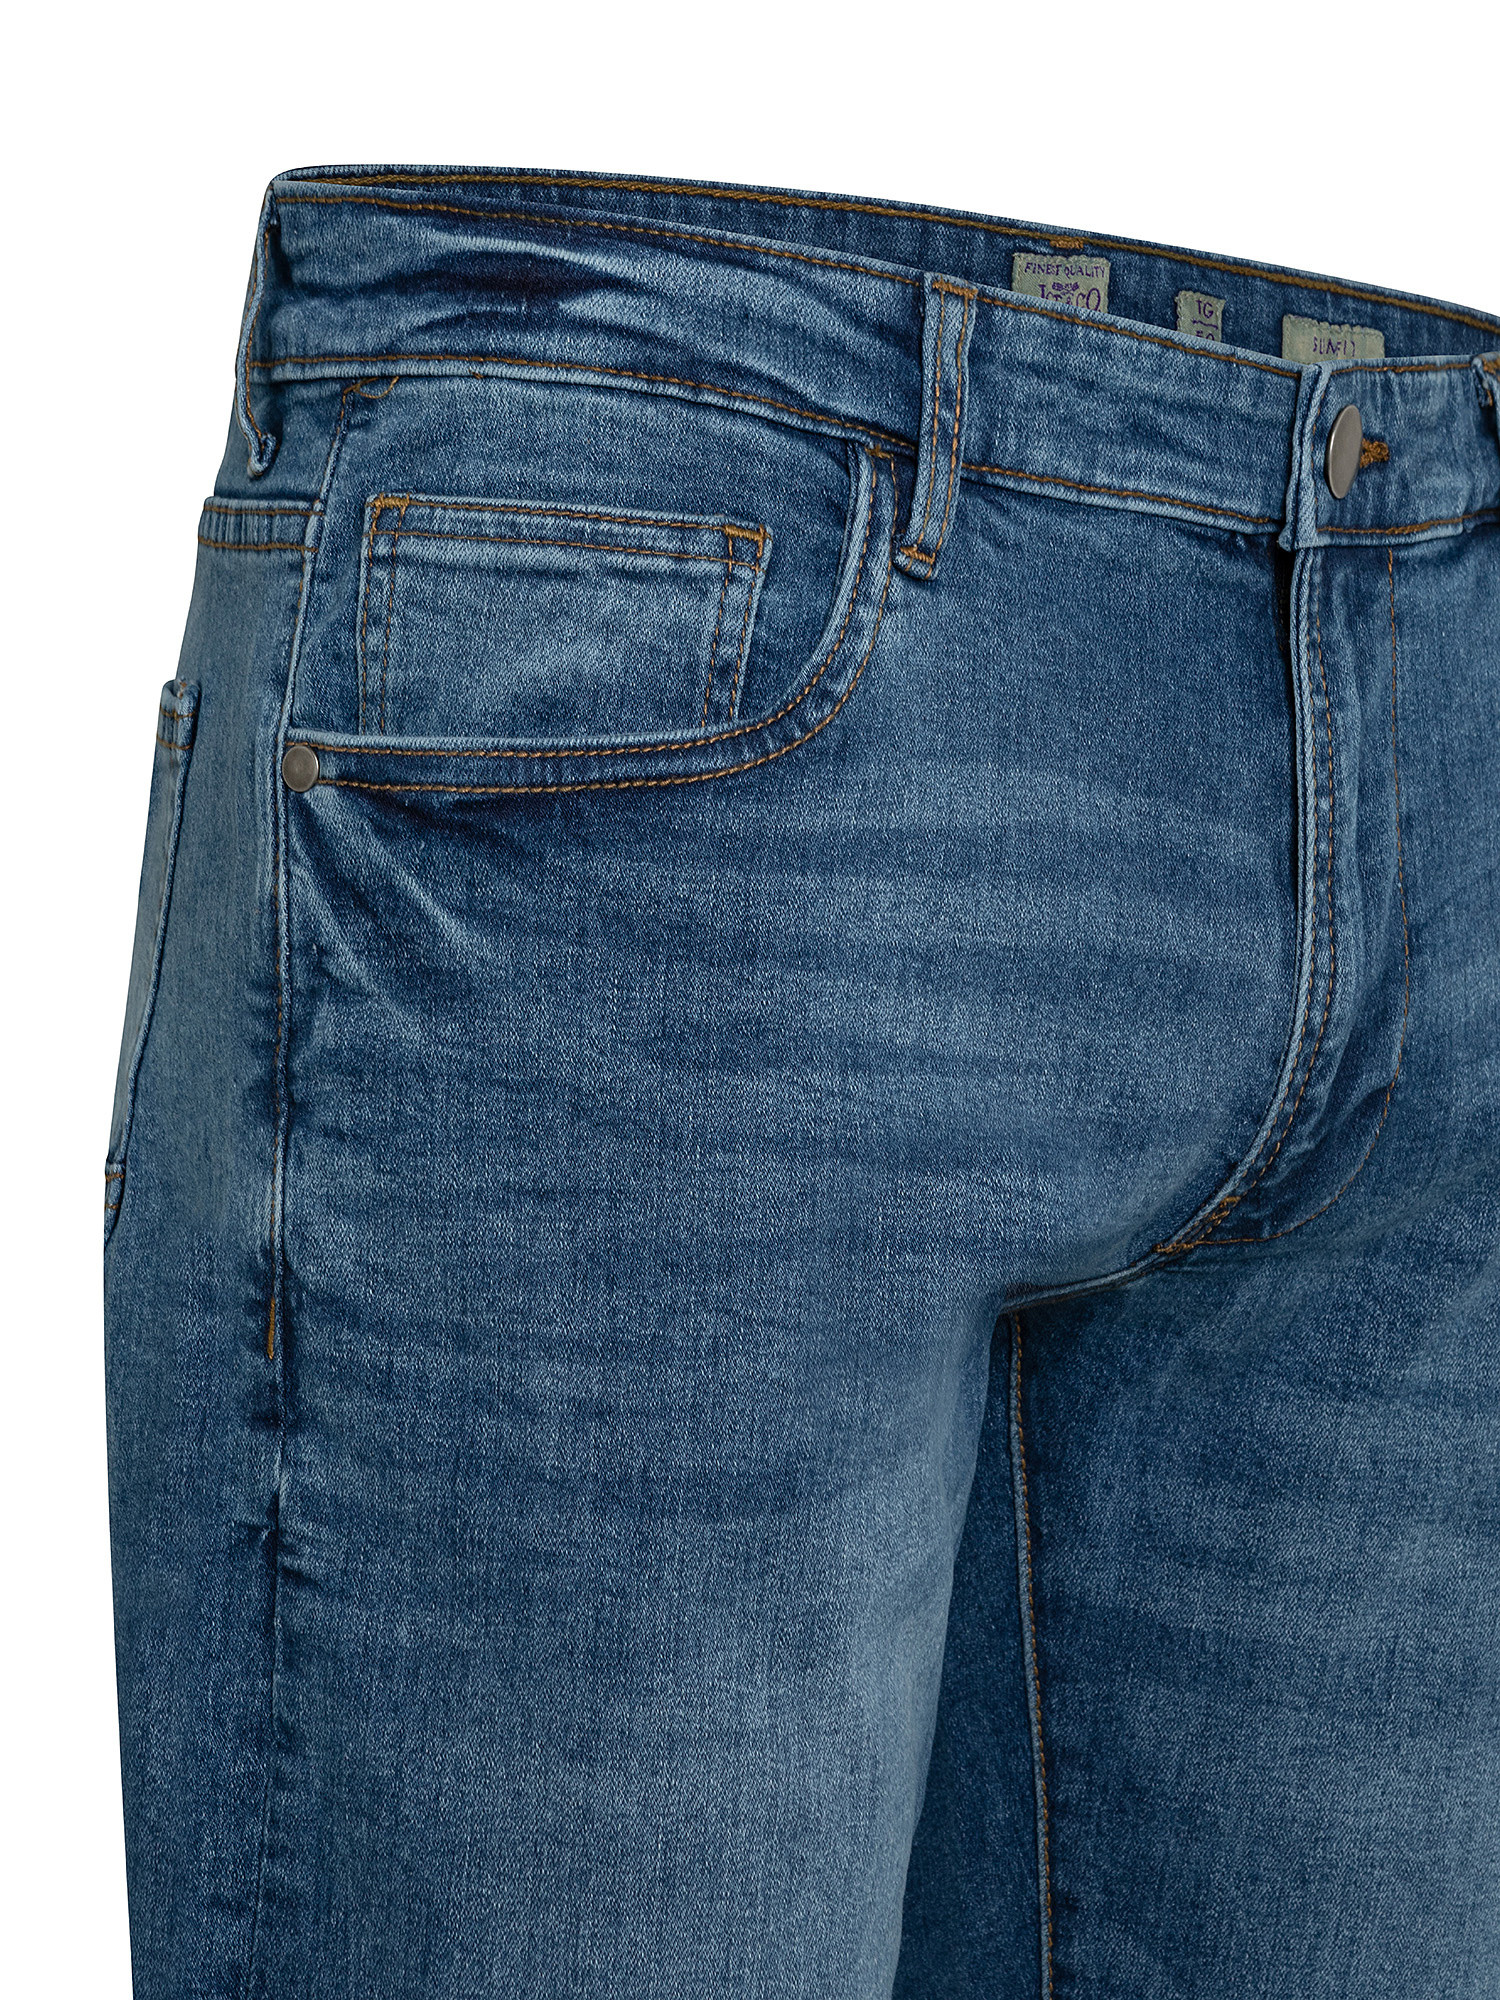 Jeans 5 tasche slim cotone stretch, Blu, large